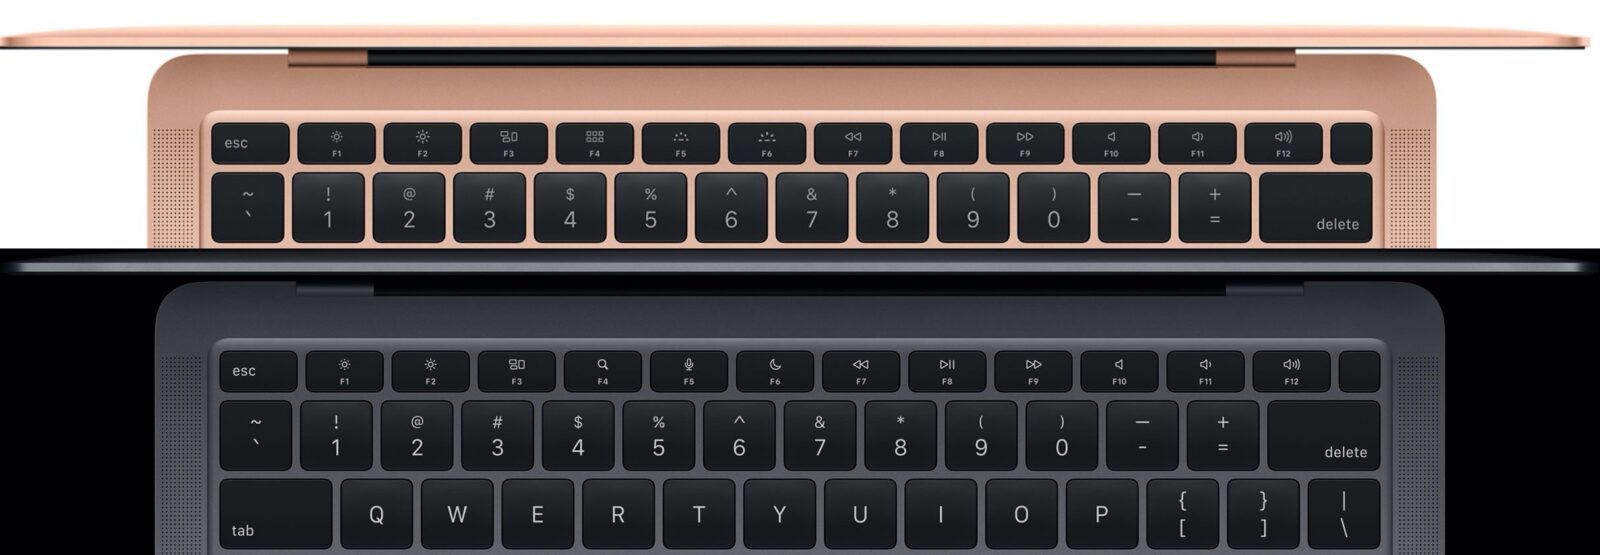 Una piccola novità sulle tastiere dei nuovi MacBook Air e MacBook Pro 13″